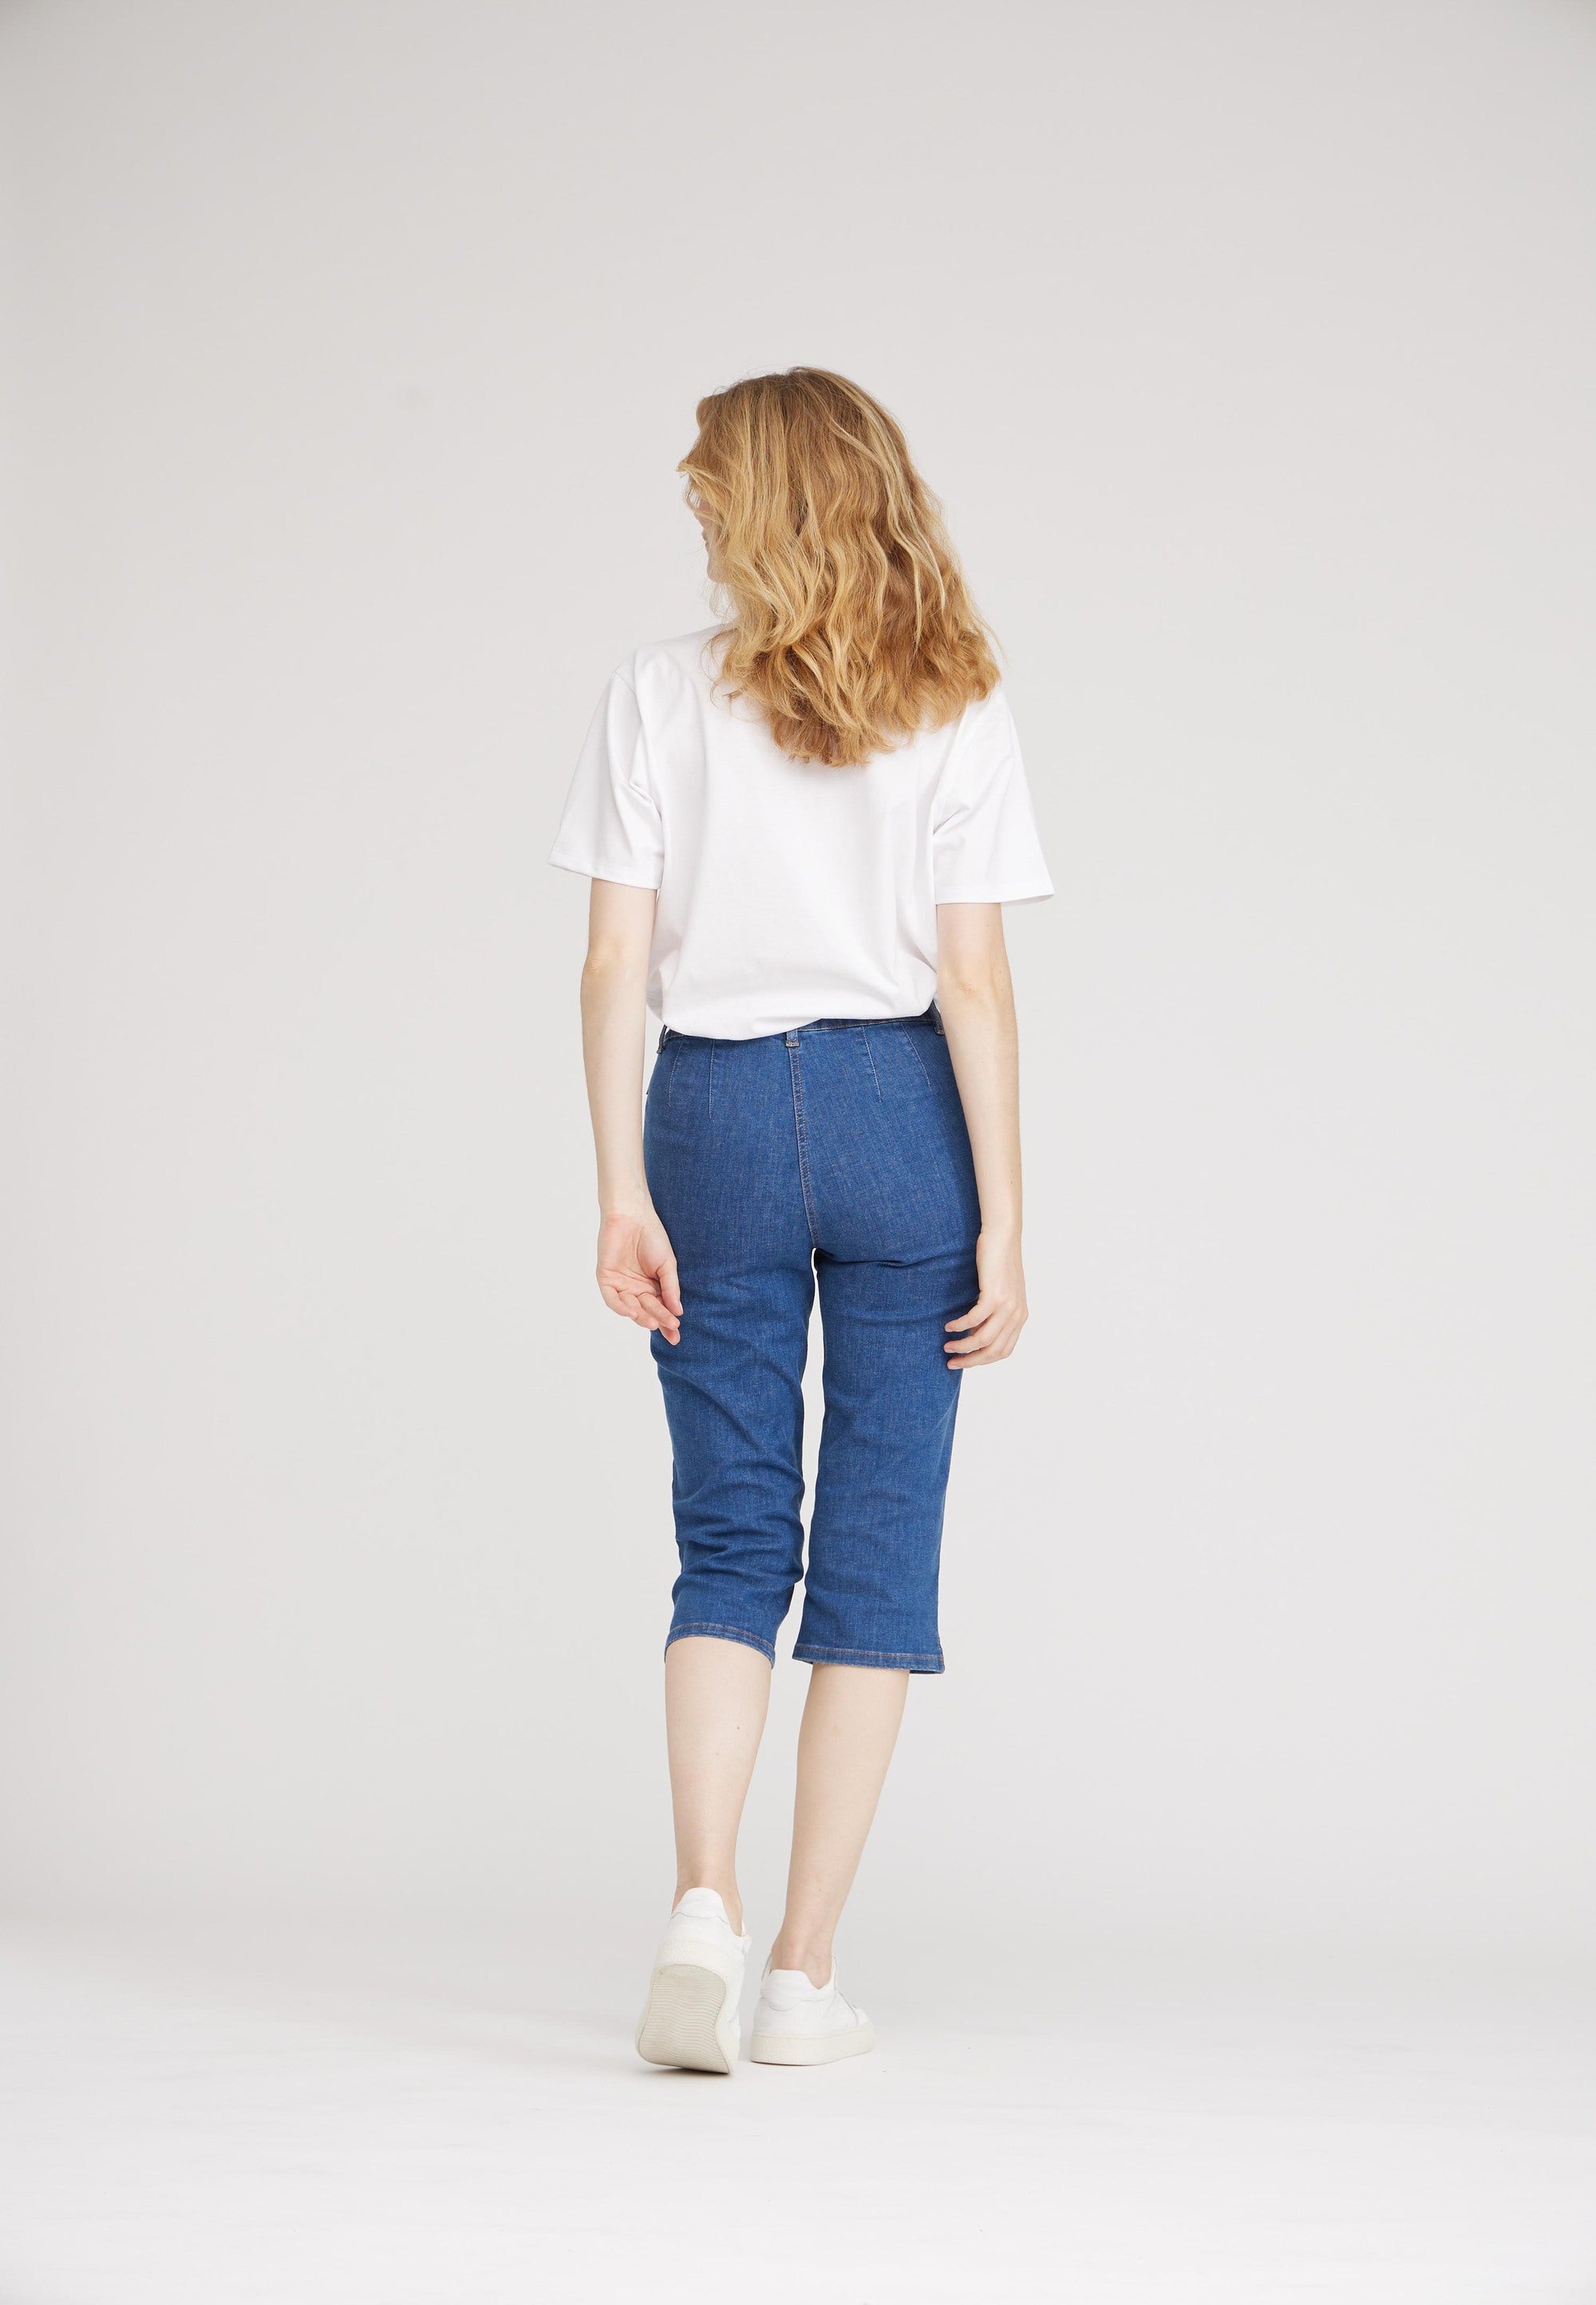 LAURIE Kelly Regular Capri Short Length Trousers REGULAR 49401 Blue Denim